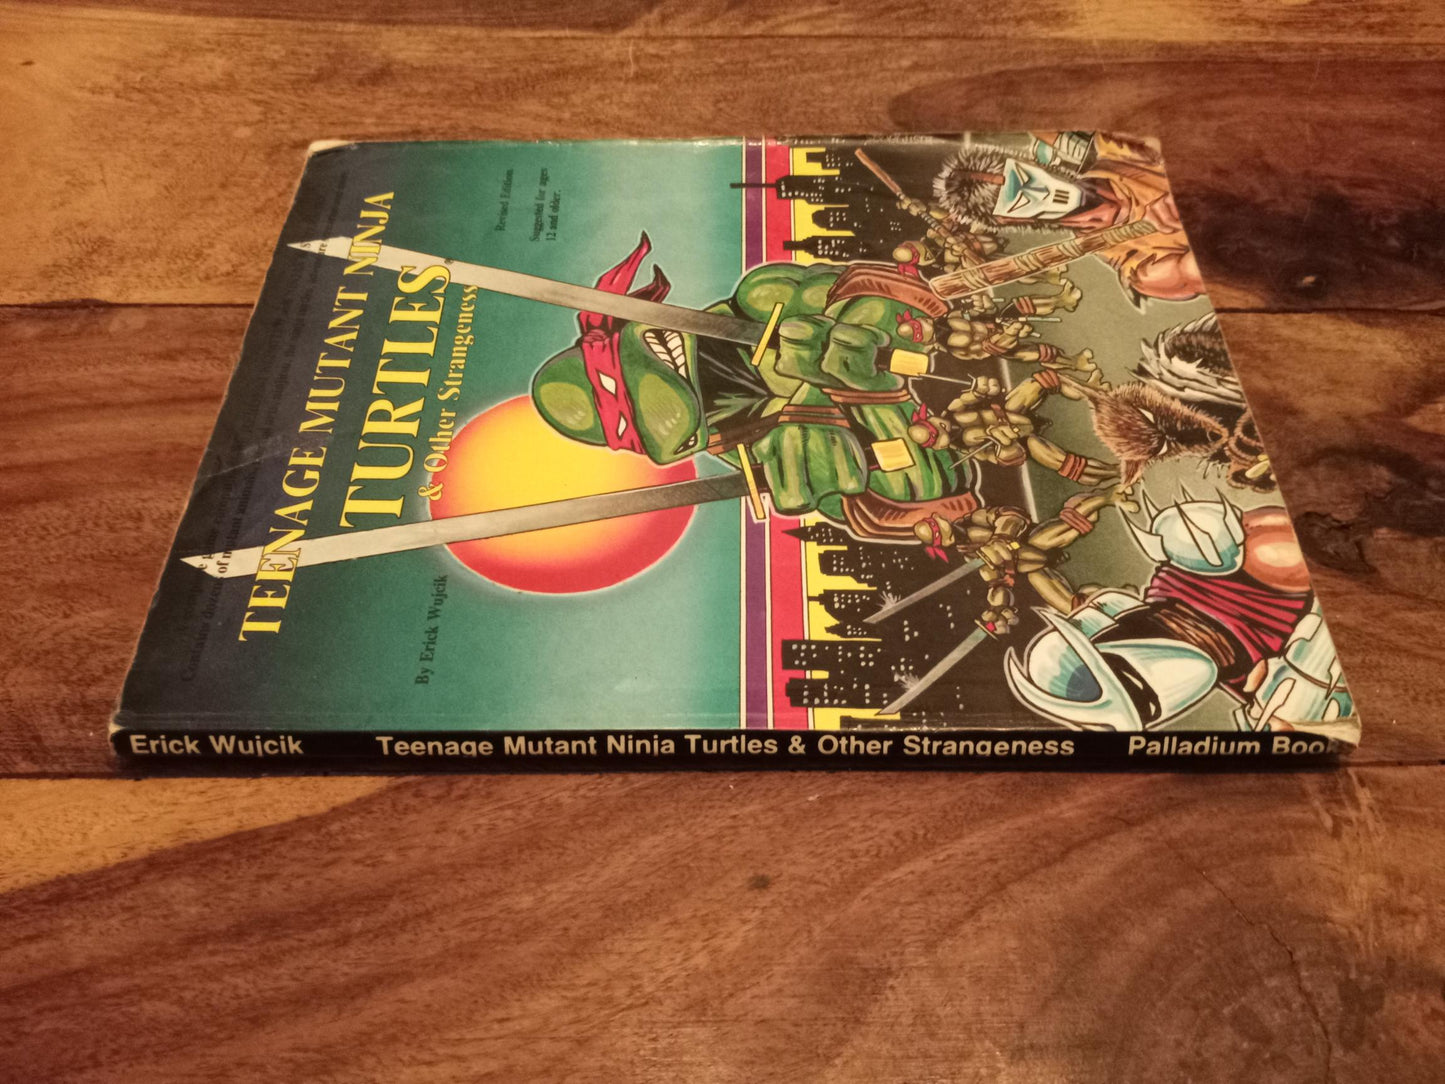 Teenage Mutant Ninja Turtles & Other Strangeness Palladium 1988